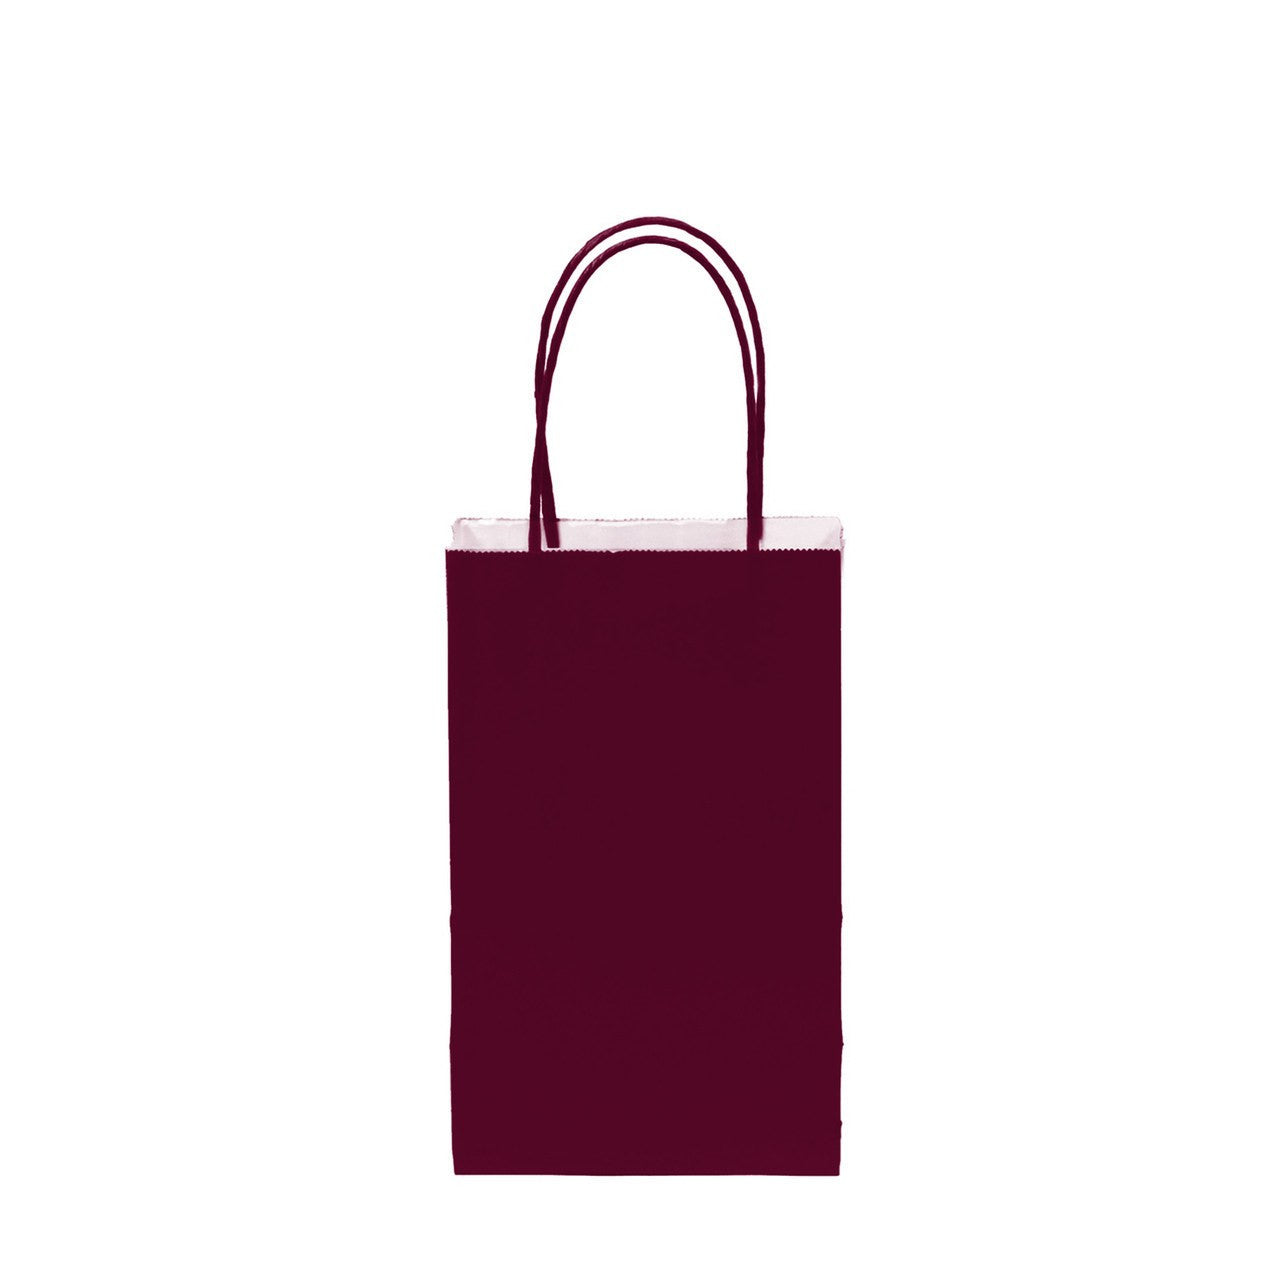 12 pcs- Solid Burgundy Color Kraft Bag 5" x 8.25"